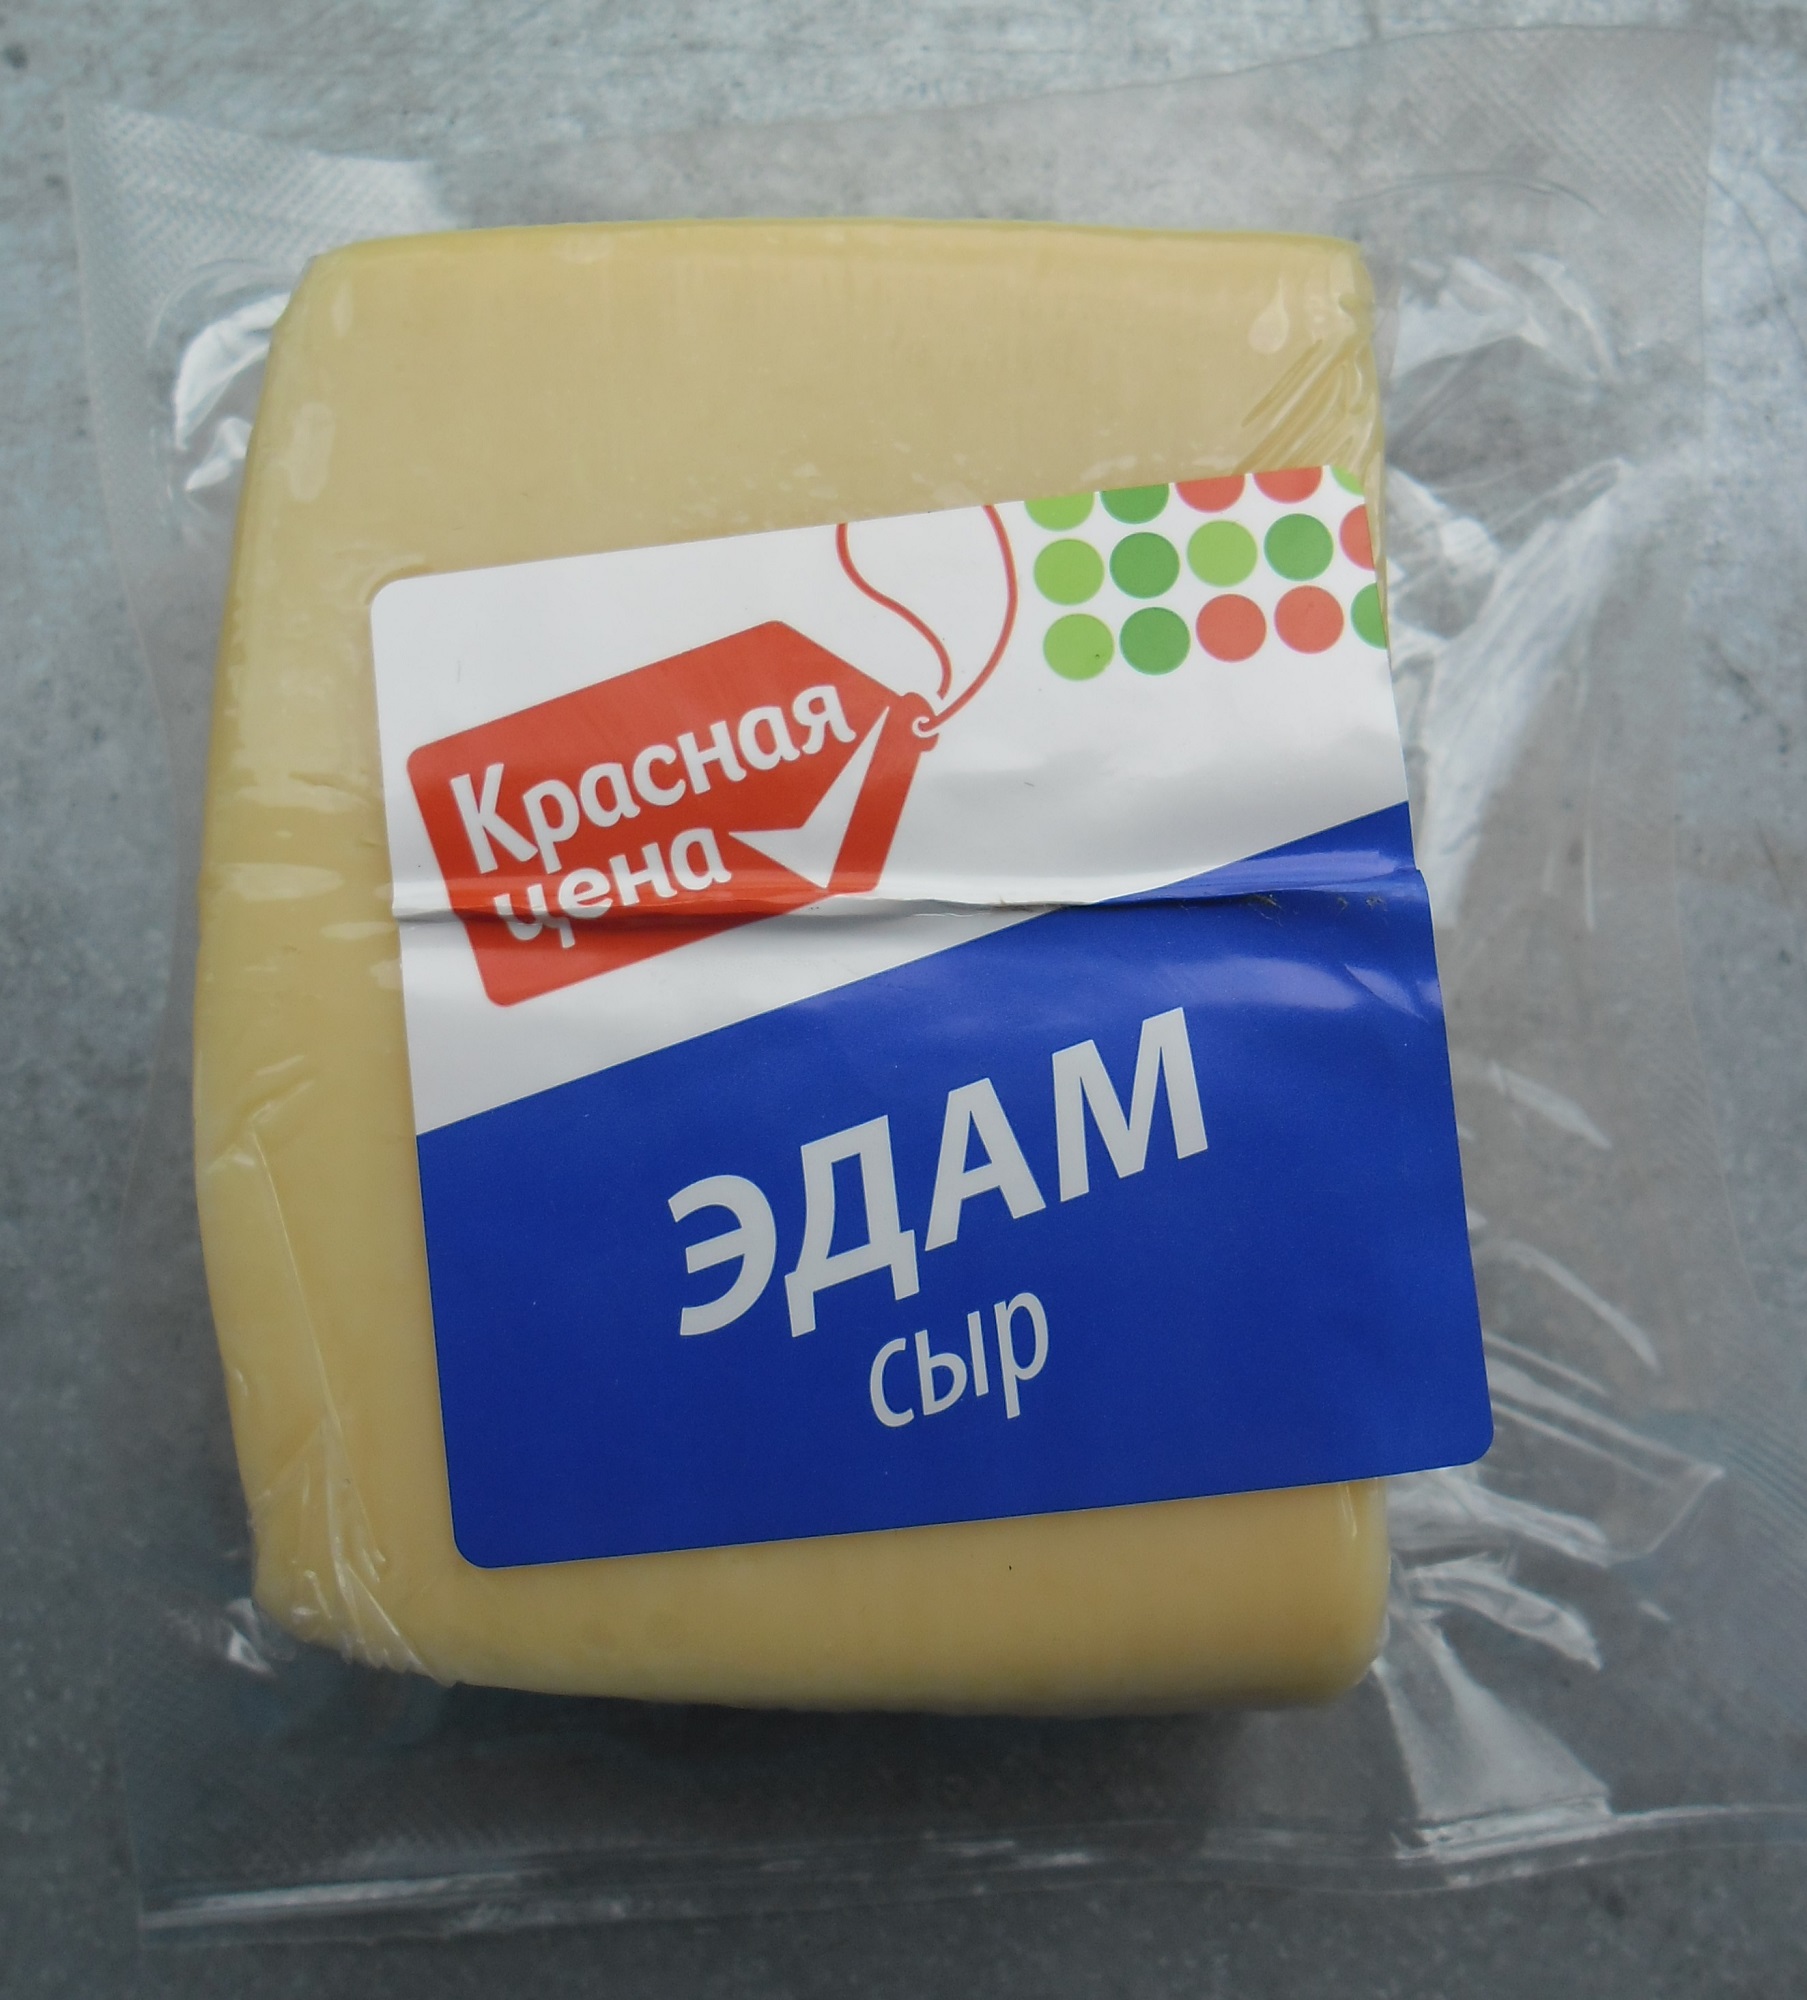 Сыр понравился. Сыр Edam. Эдам сыр метро. Сыр в упаковке. Пармезан в красной упаковке.